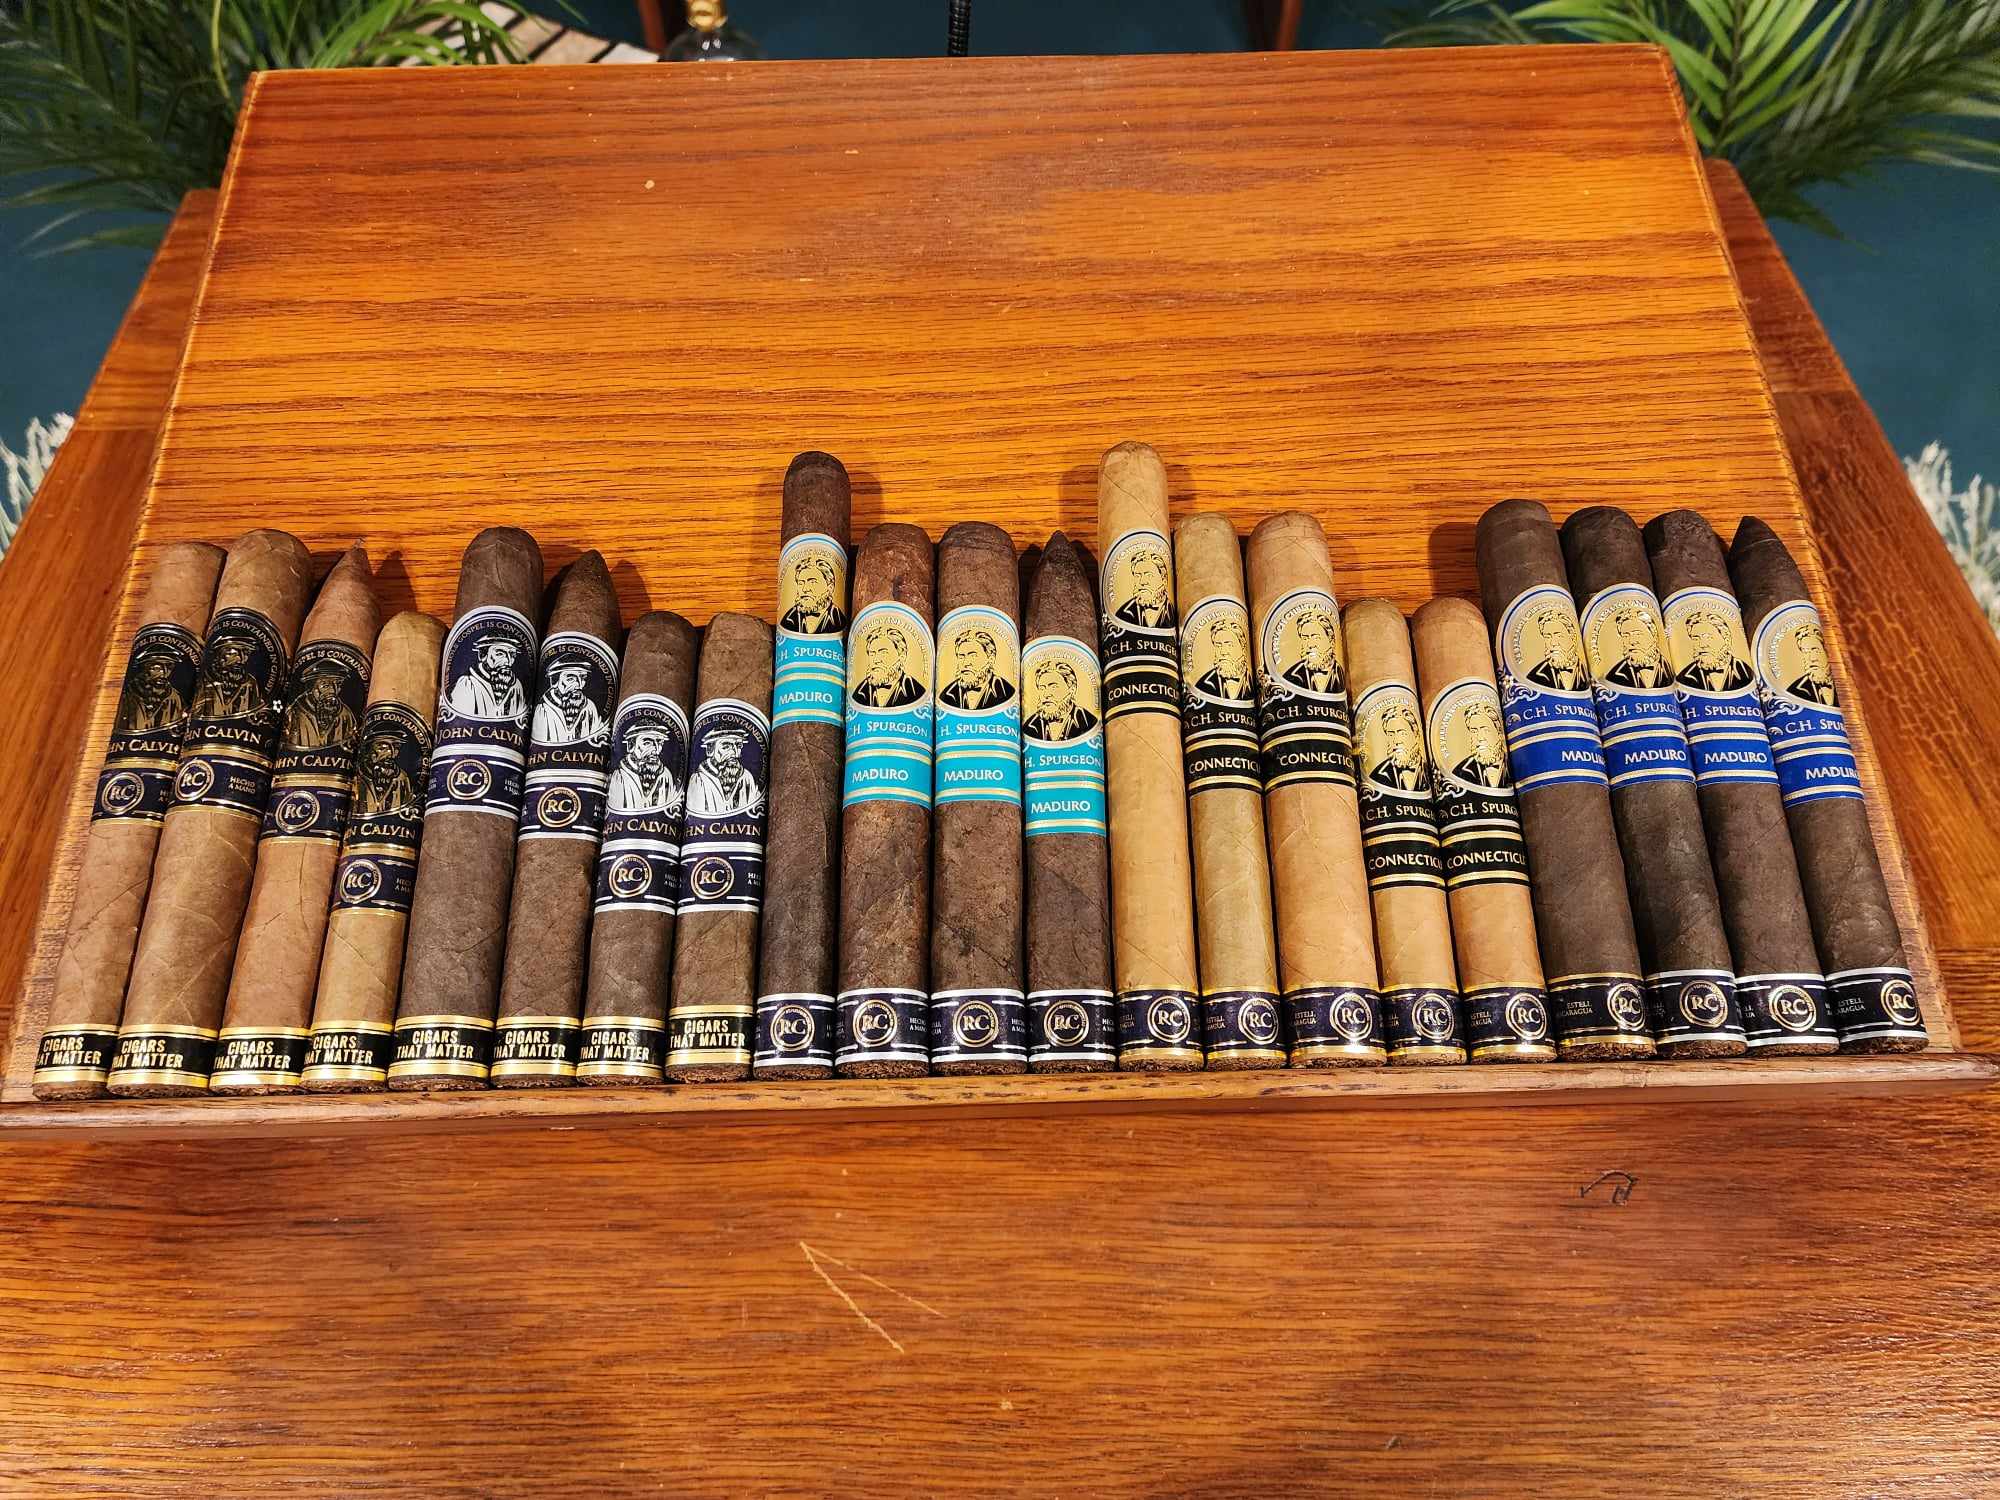 Reformed Cigars